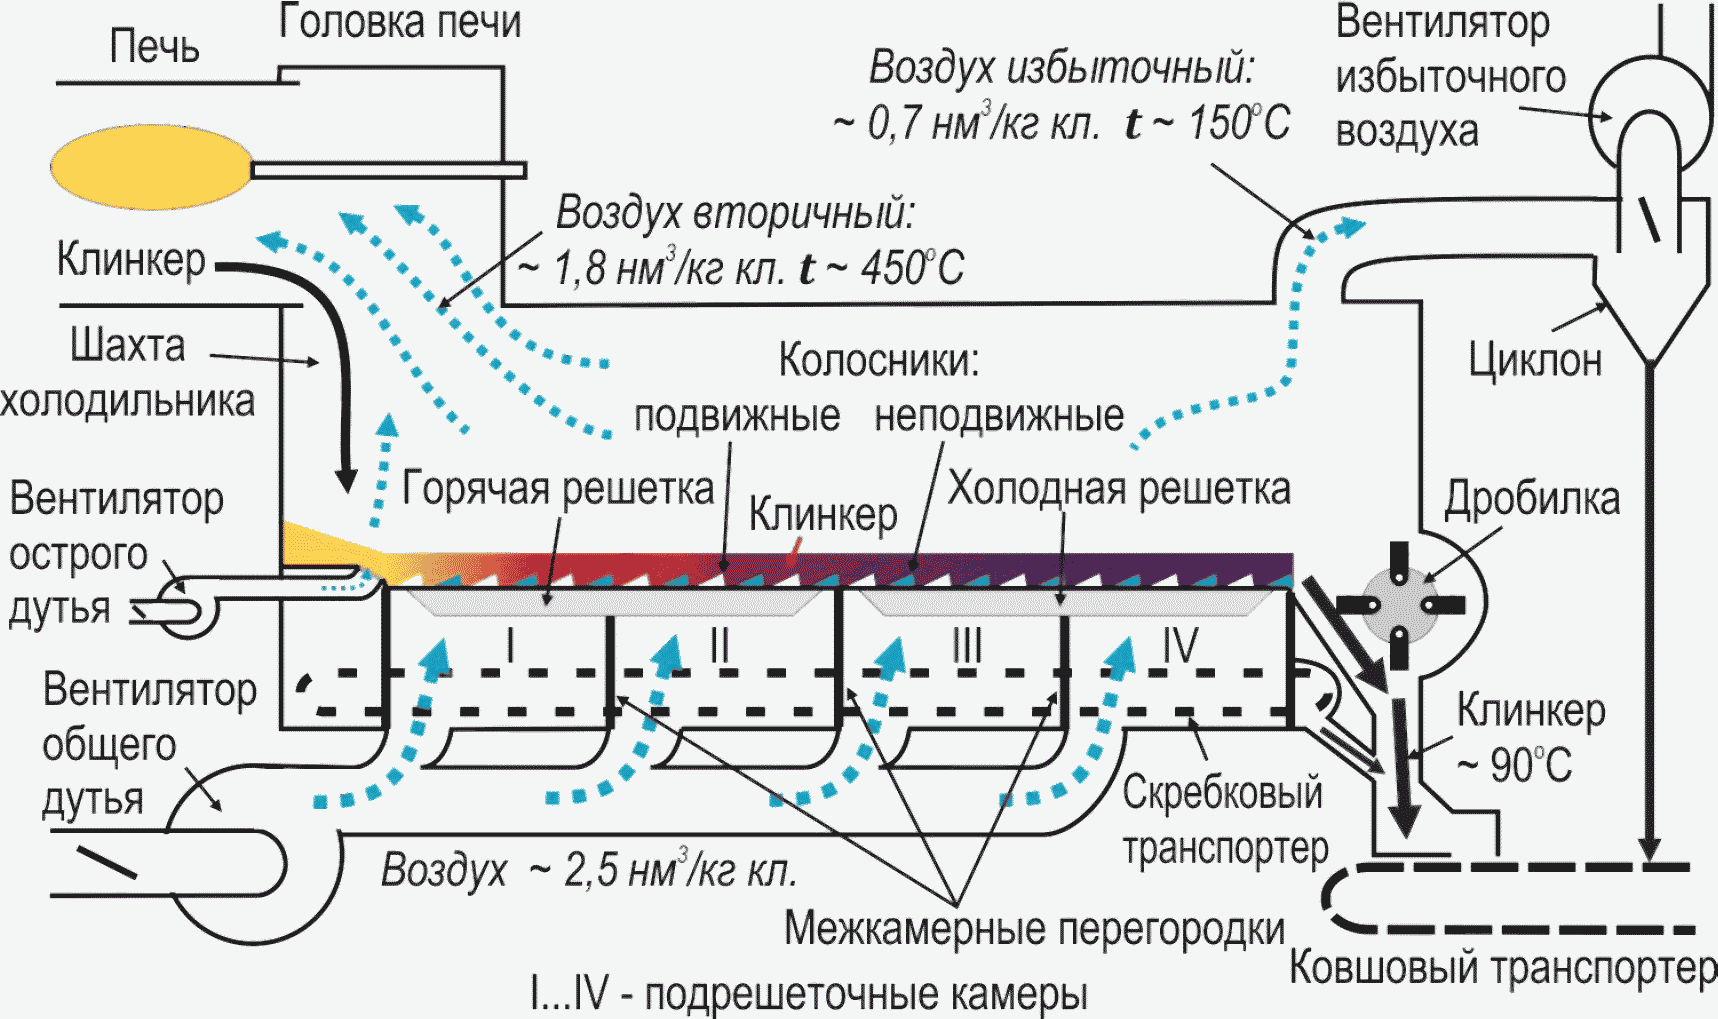 Схема колосникового охладителя Клинкера типа « Волга»: